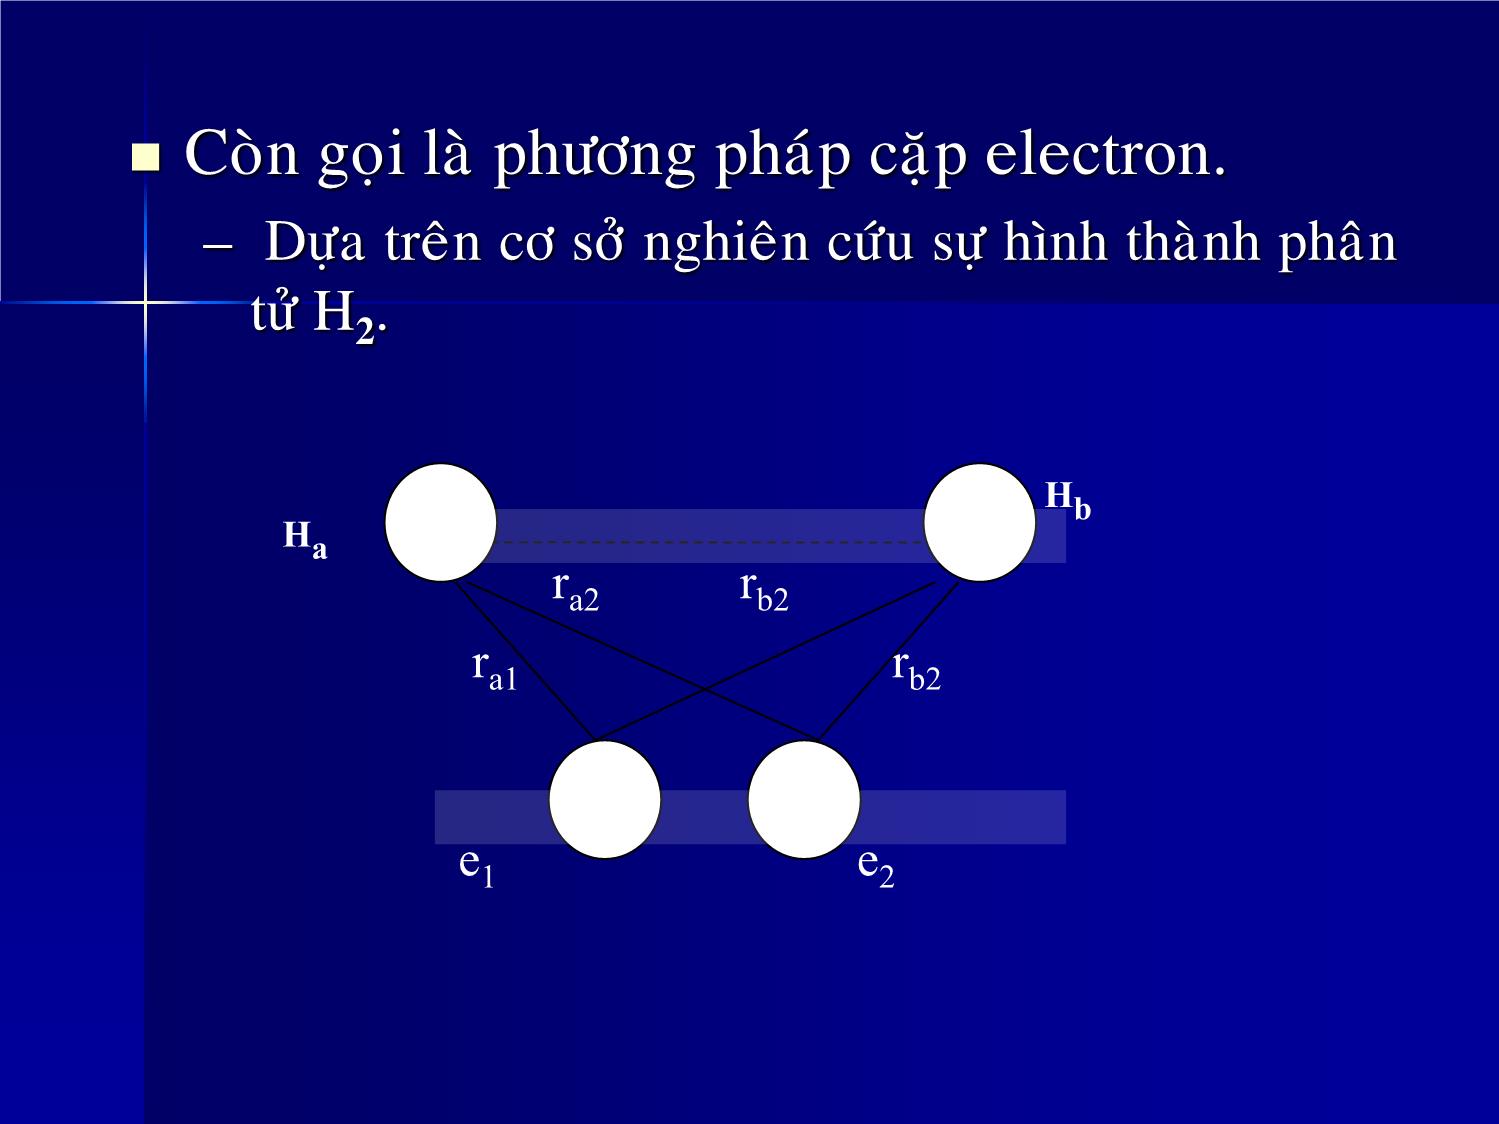 Bài giảng Hóa đại cương - Chương 4: Liên kết hóa học và cấu tạo phân tử - Huỳnh Kỳ Phương Hạ trang 9